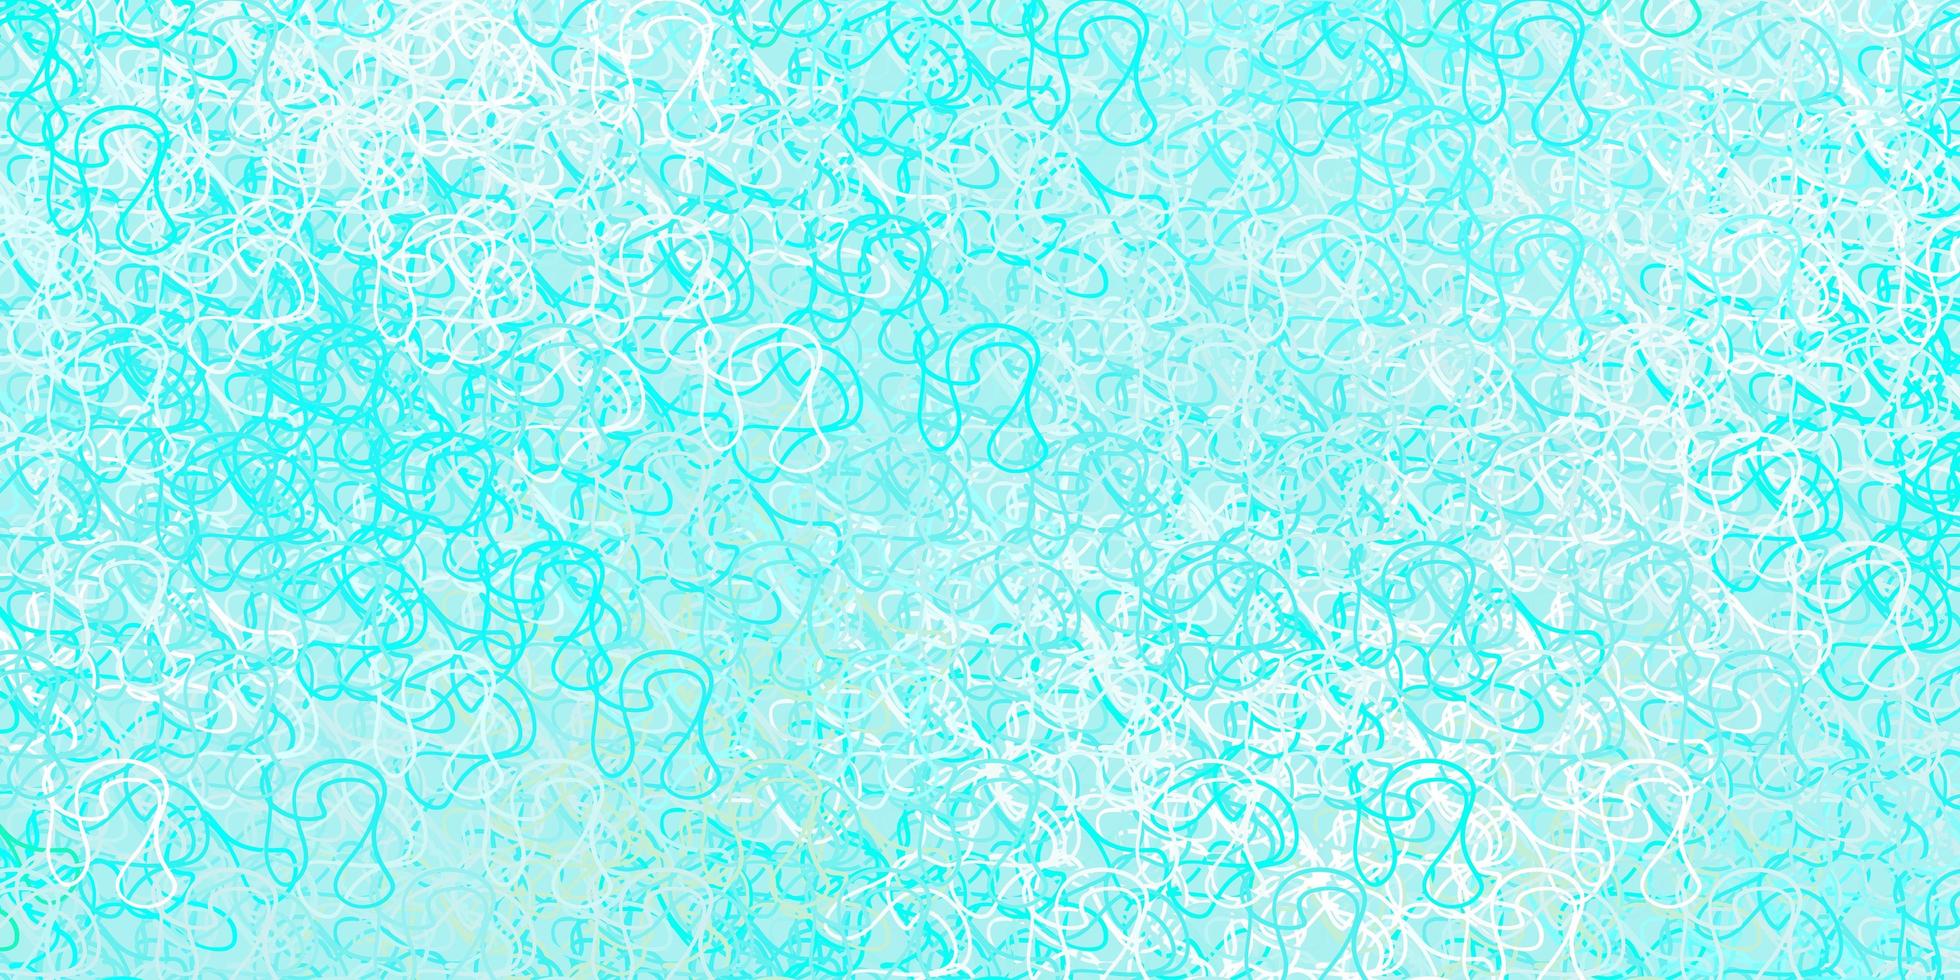 textura vector azul, verde claro com arco circular.